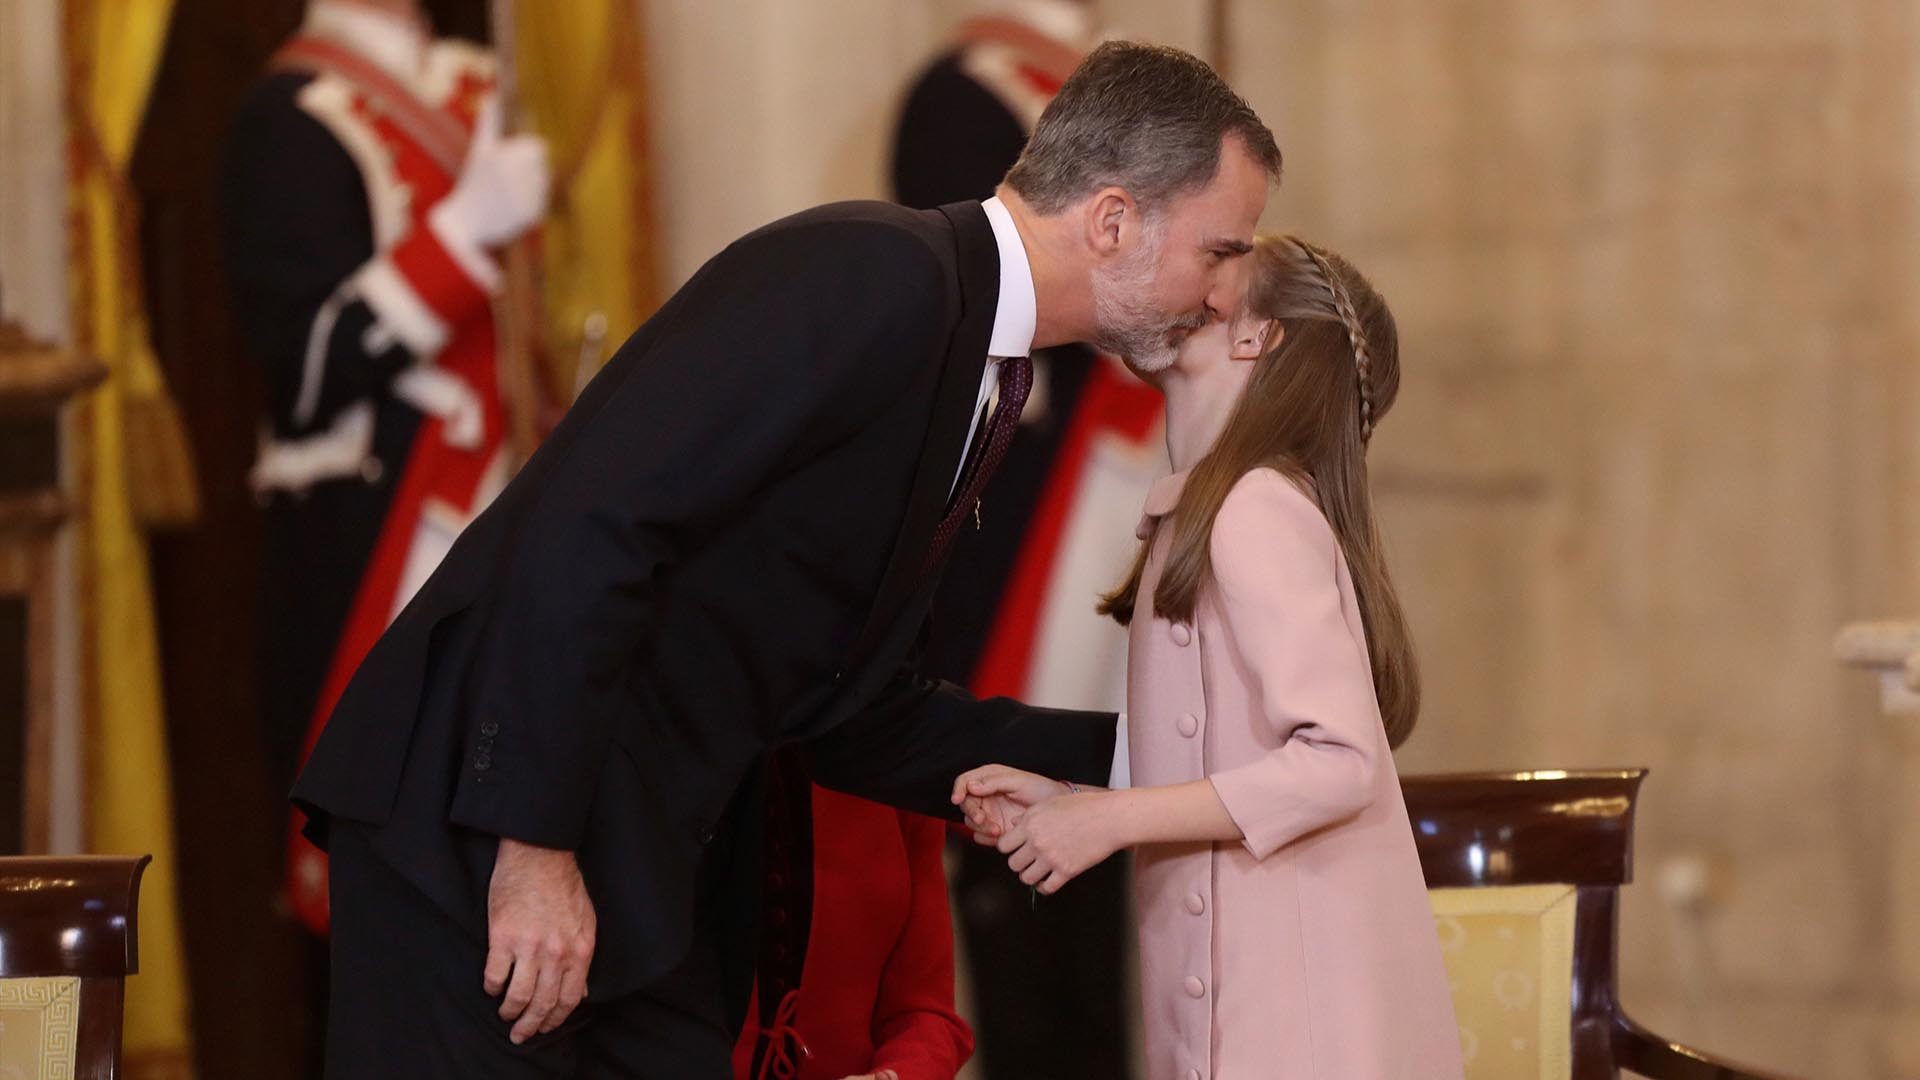 Felipe VI impone el Toisón de Oro a la princesa de Asturias: "Confío plenamente en ti"